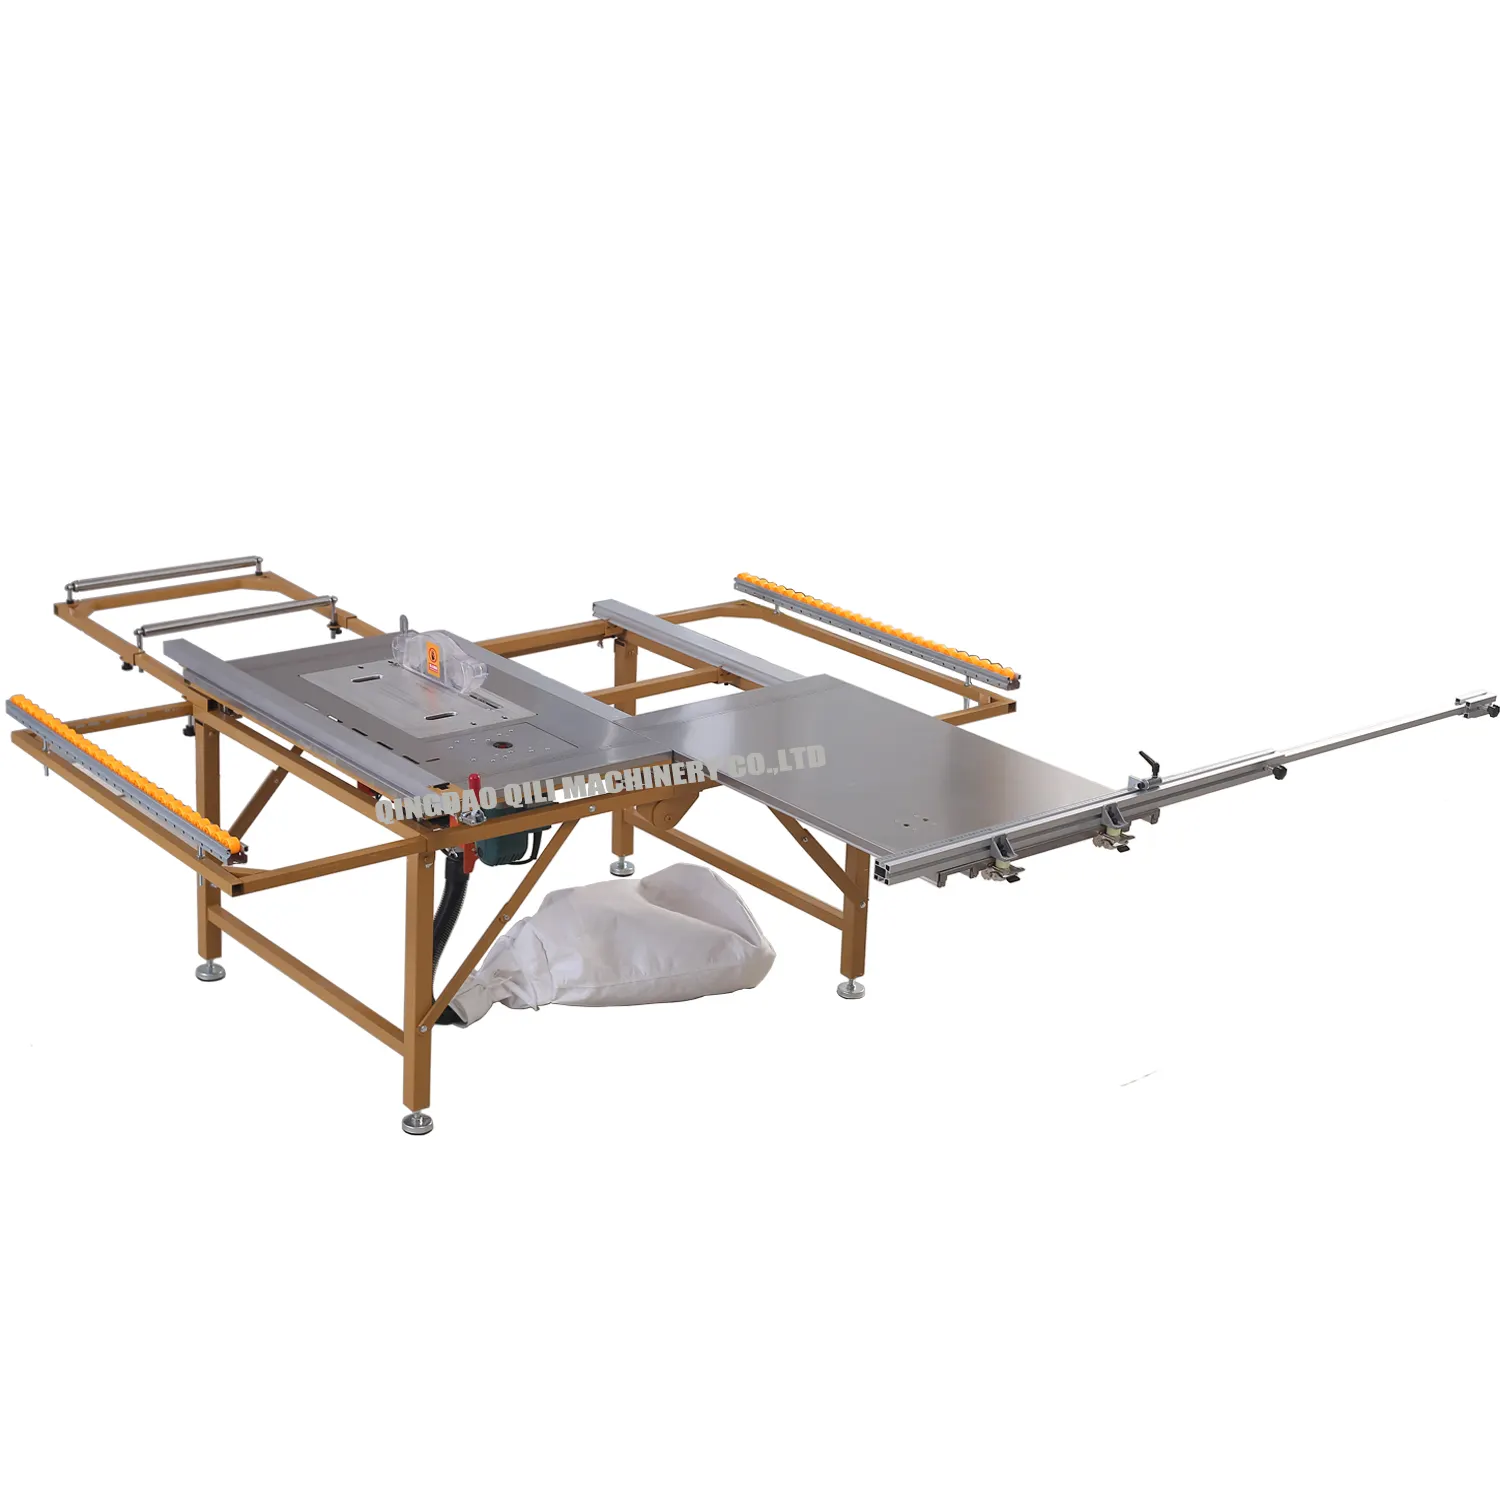 เครื่องตัดไม้เลื่อยโต๊ะไม้แบบพกพาแนวนอนสำหรับผลิตสายบนโรงเลื่อย